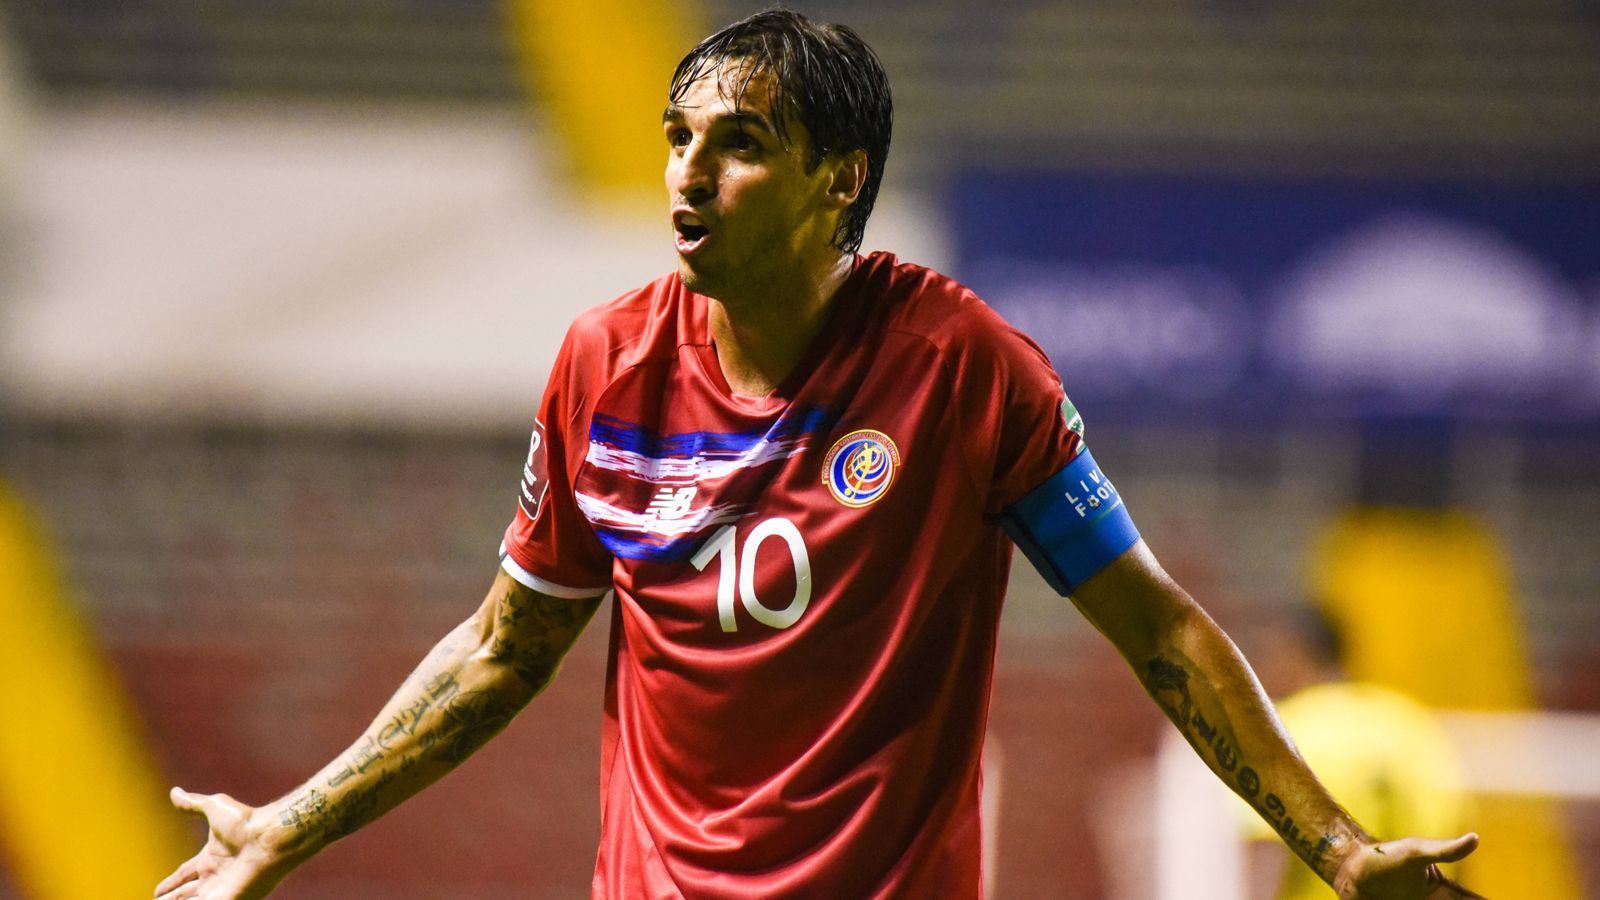 
                <strong>Costa Rica: Bryan Ruiz - Gruppe E</strong><br>
                &#x2022; Aktueller Verein: LD Alajuelense<br>&#x2022; Länderspiele: 144<br>&#x2022; Vorgänger bei der WM 2018: Bryan Ruiz<br>
              